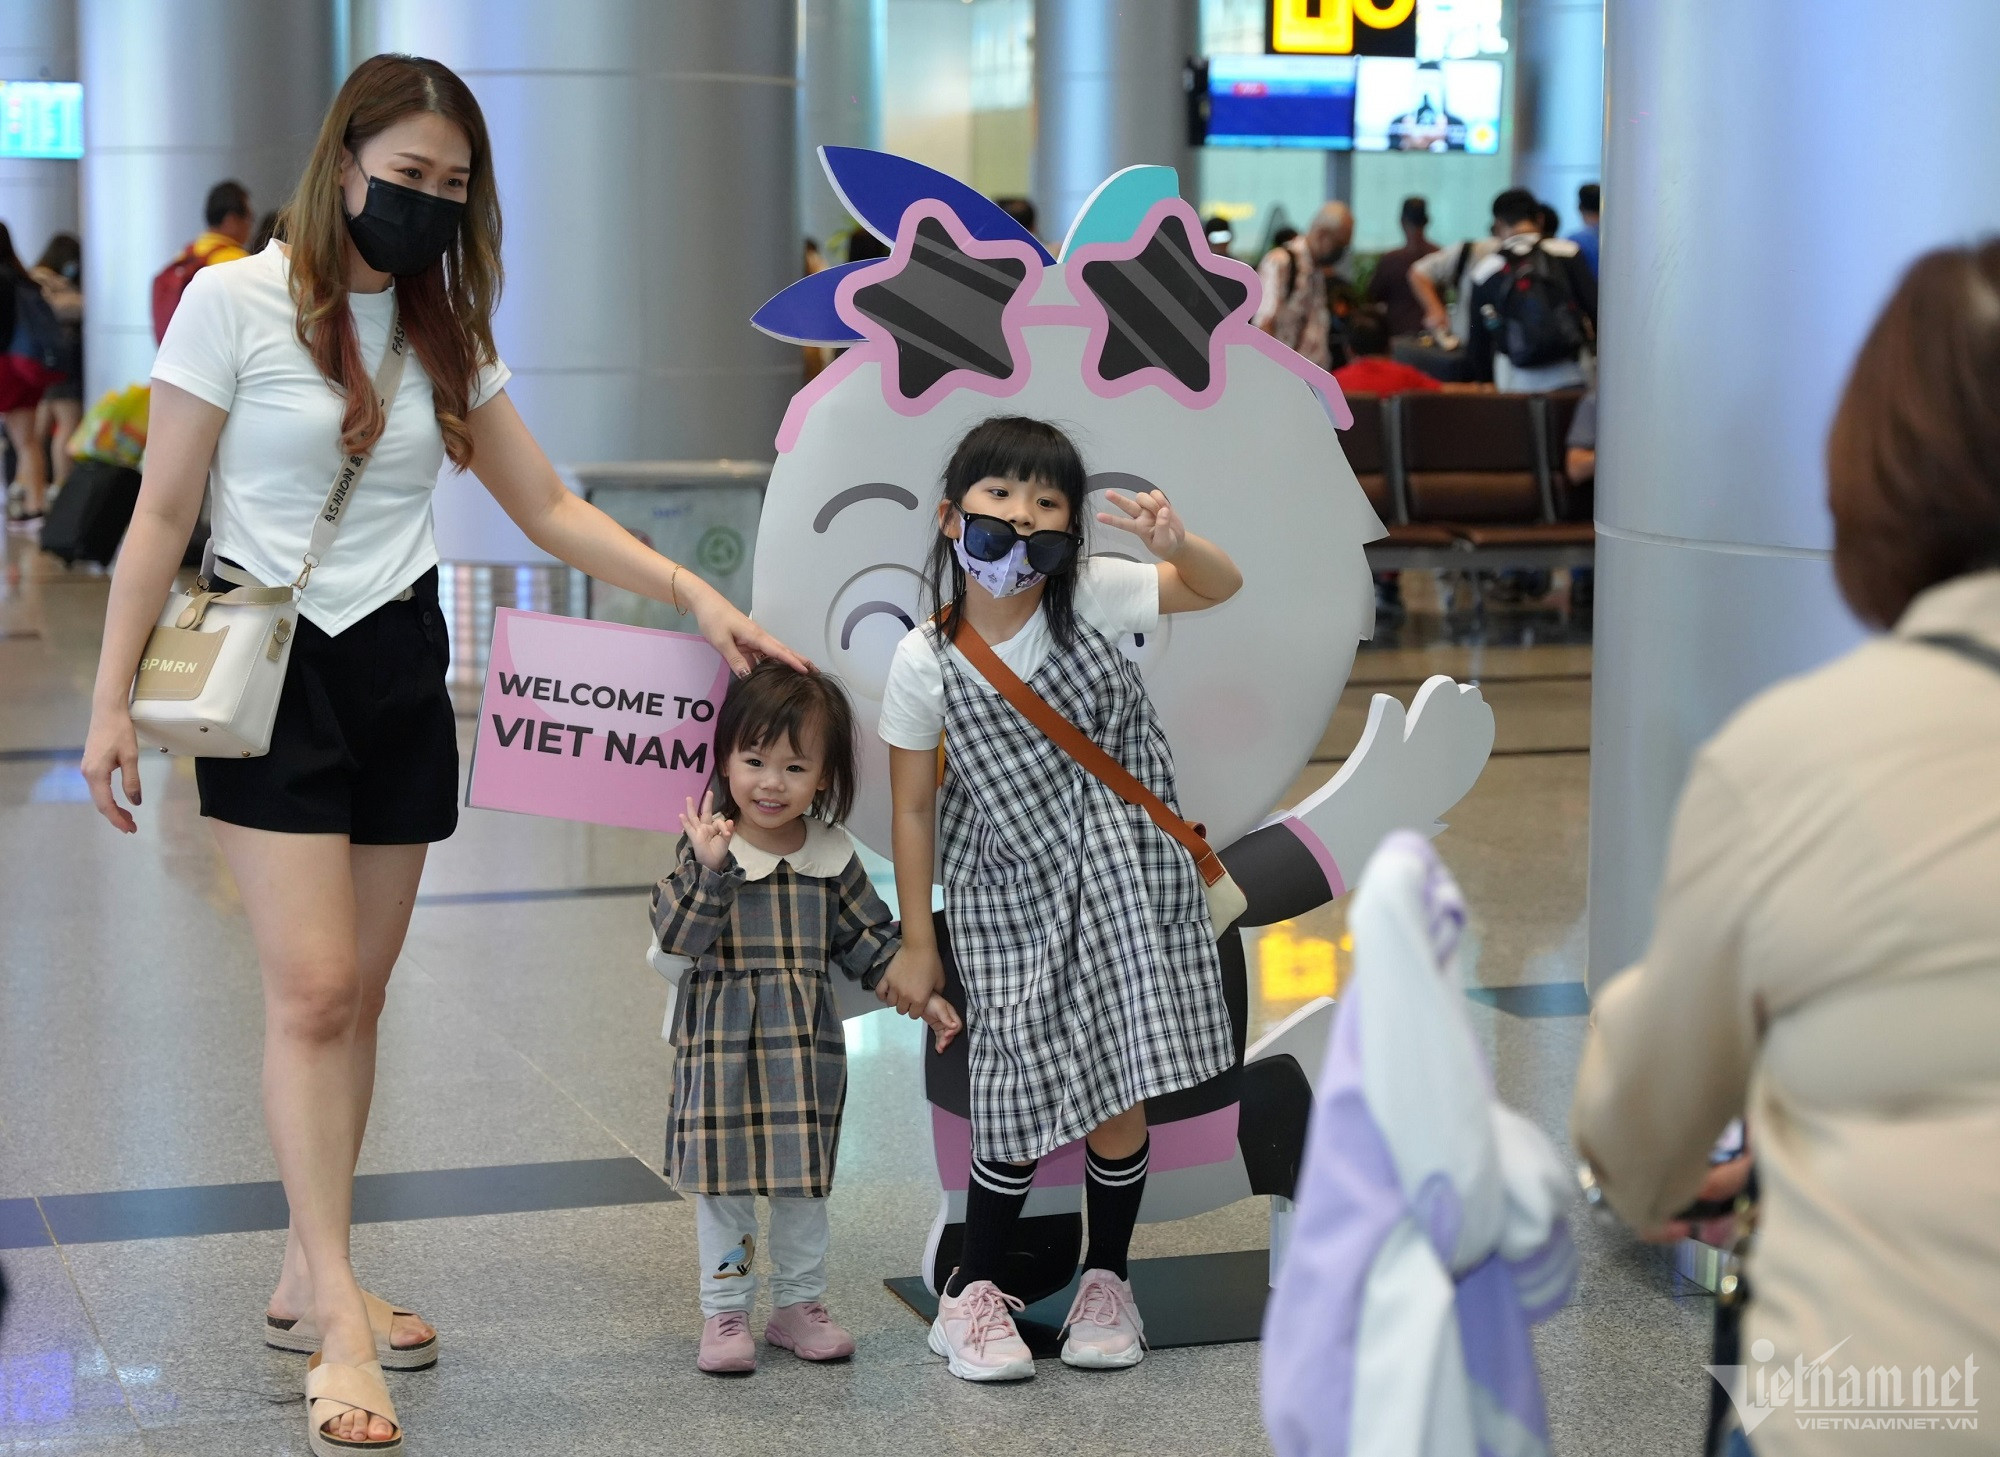 Sân bay Đà Nẵng ngập sắc hồng đen 'bắt trend' chào đón BlackPink